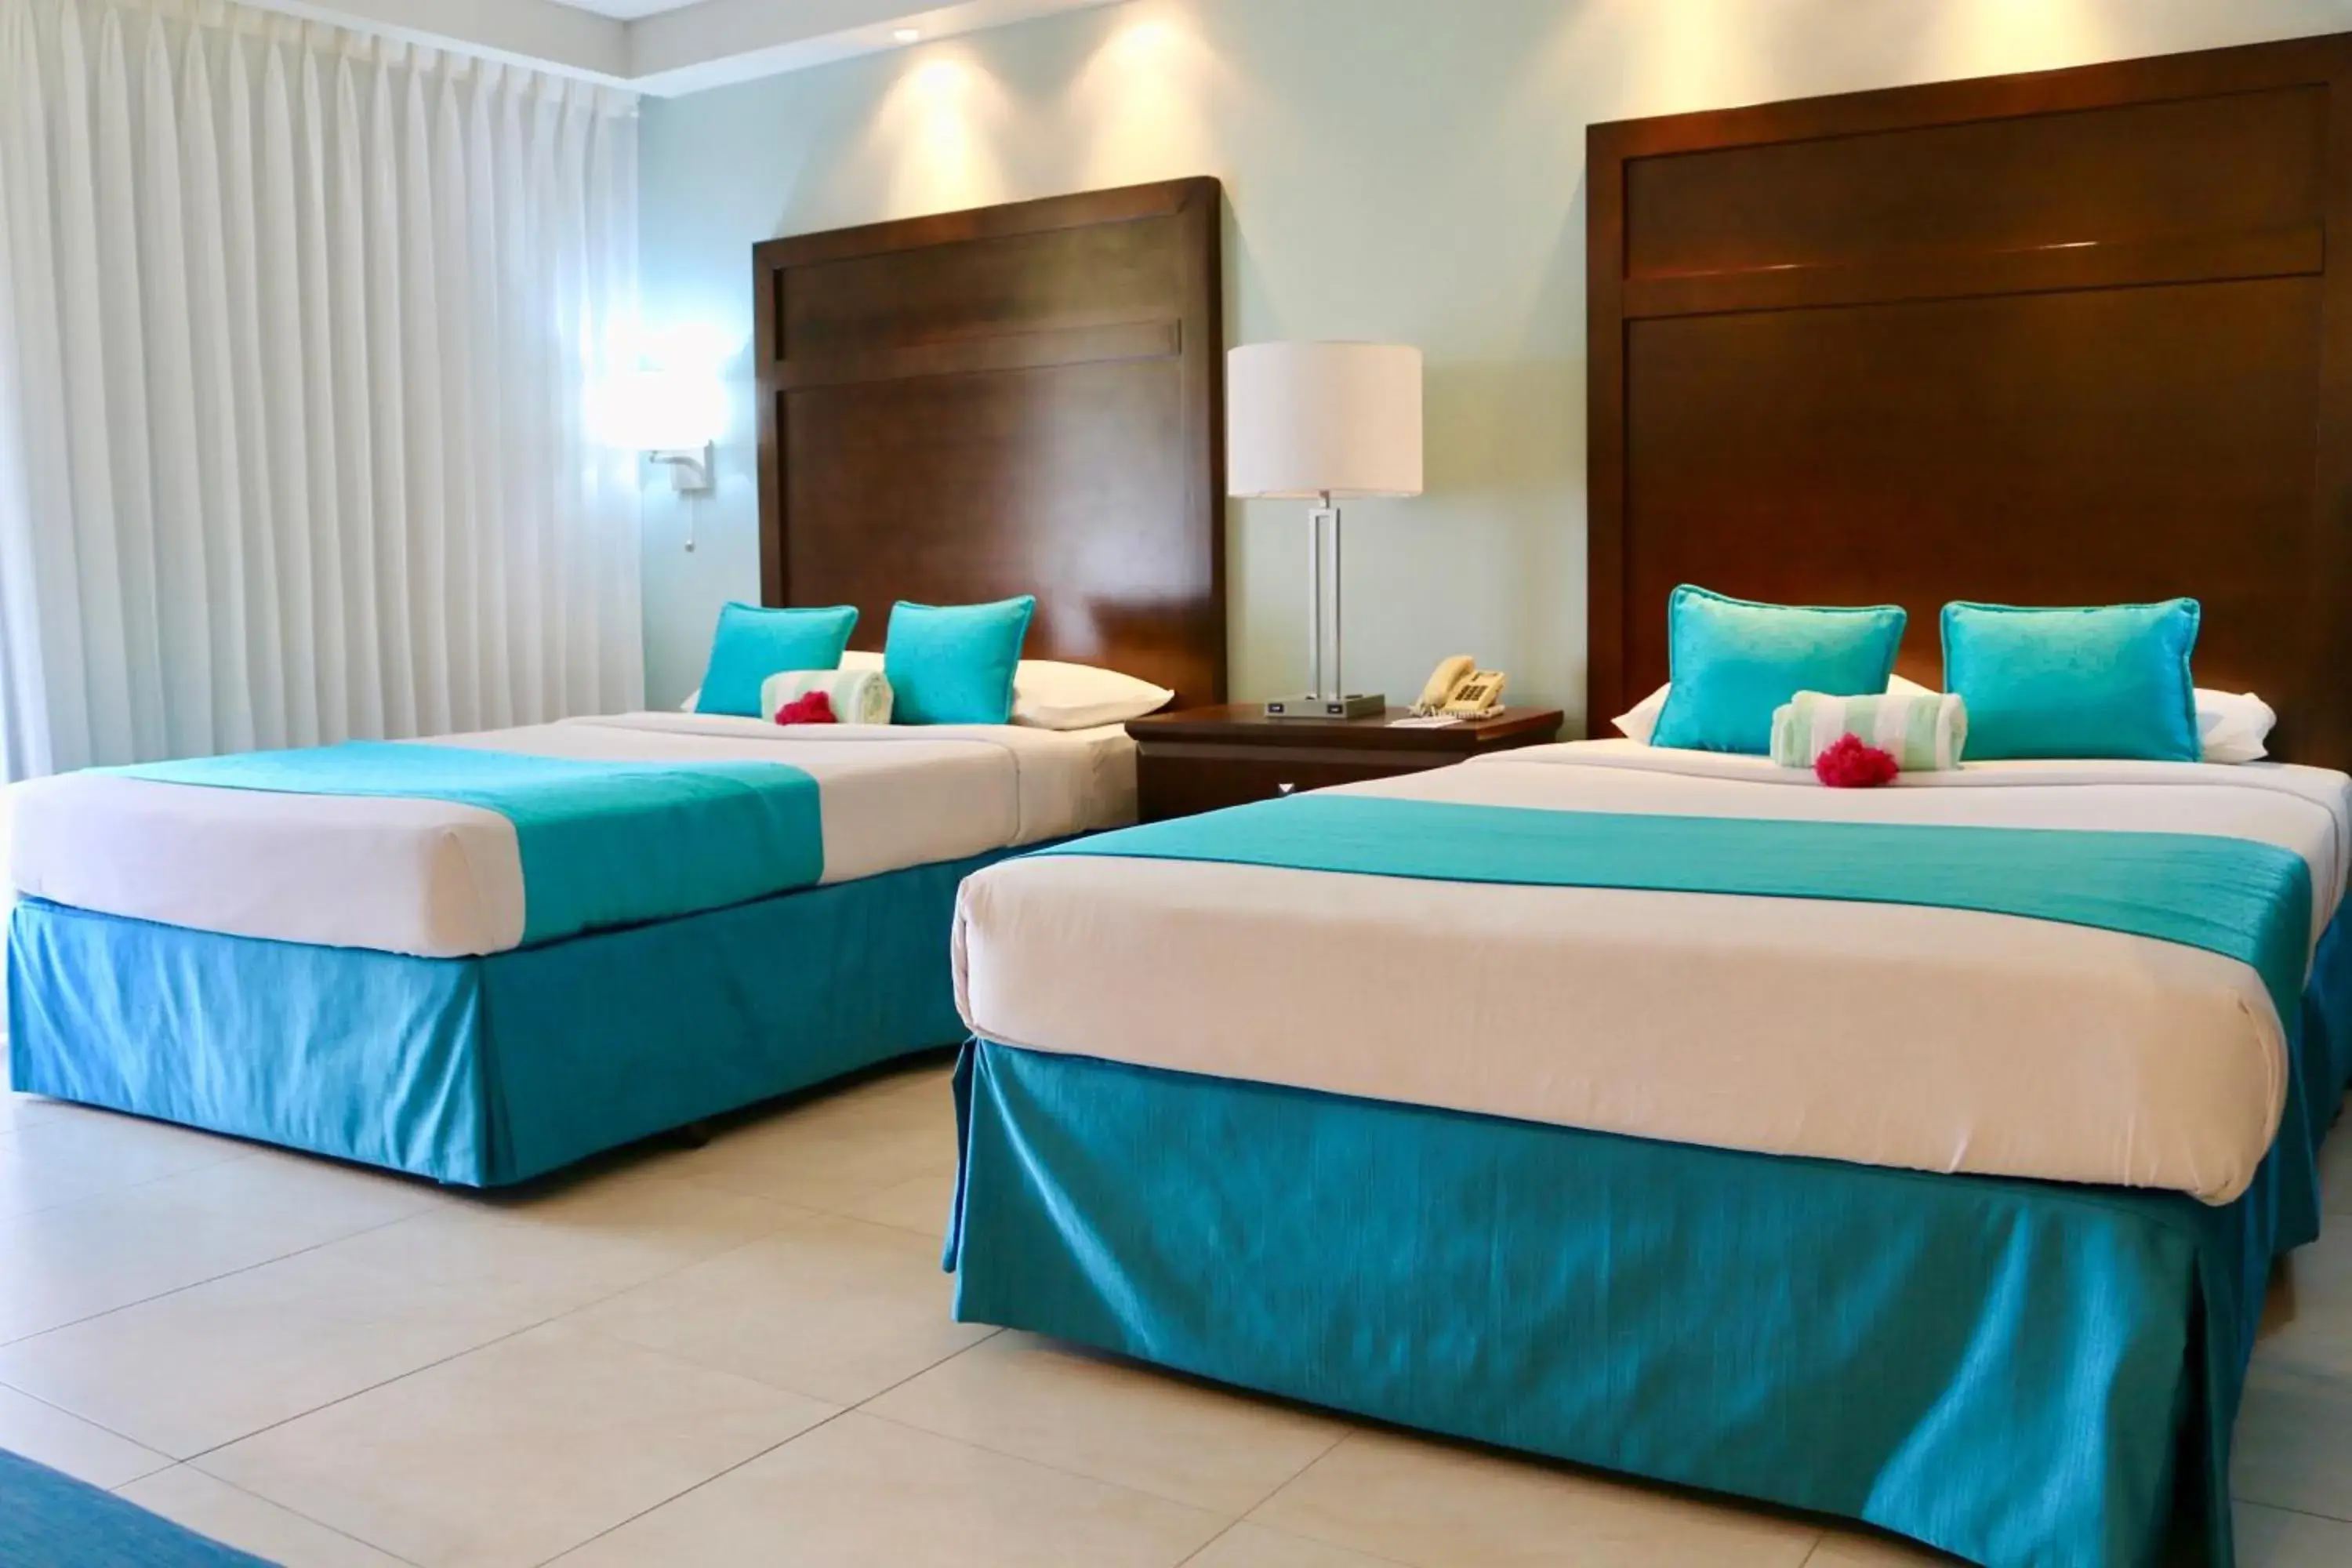 Bedroom, Bed in Mount Irvine Bay Resort